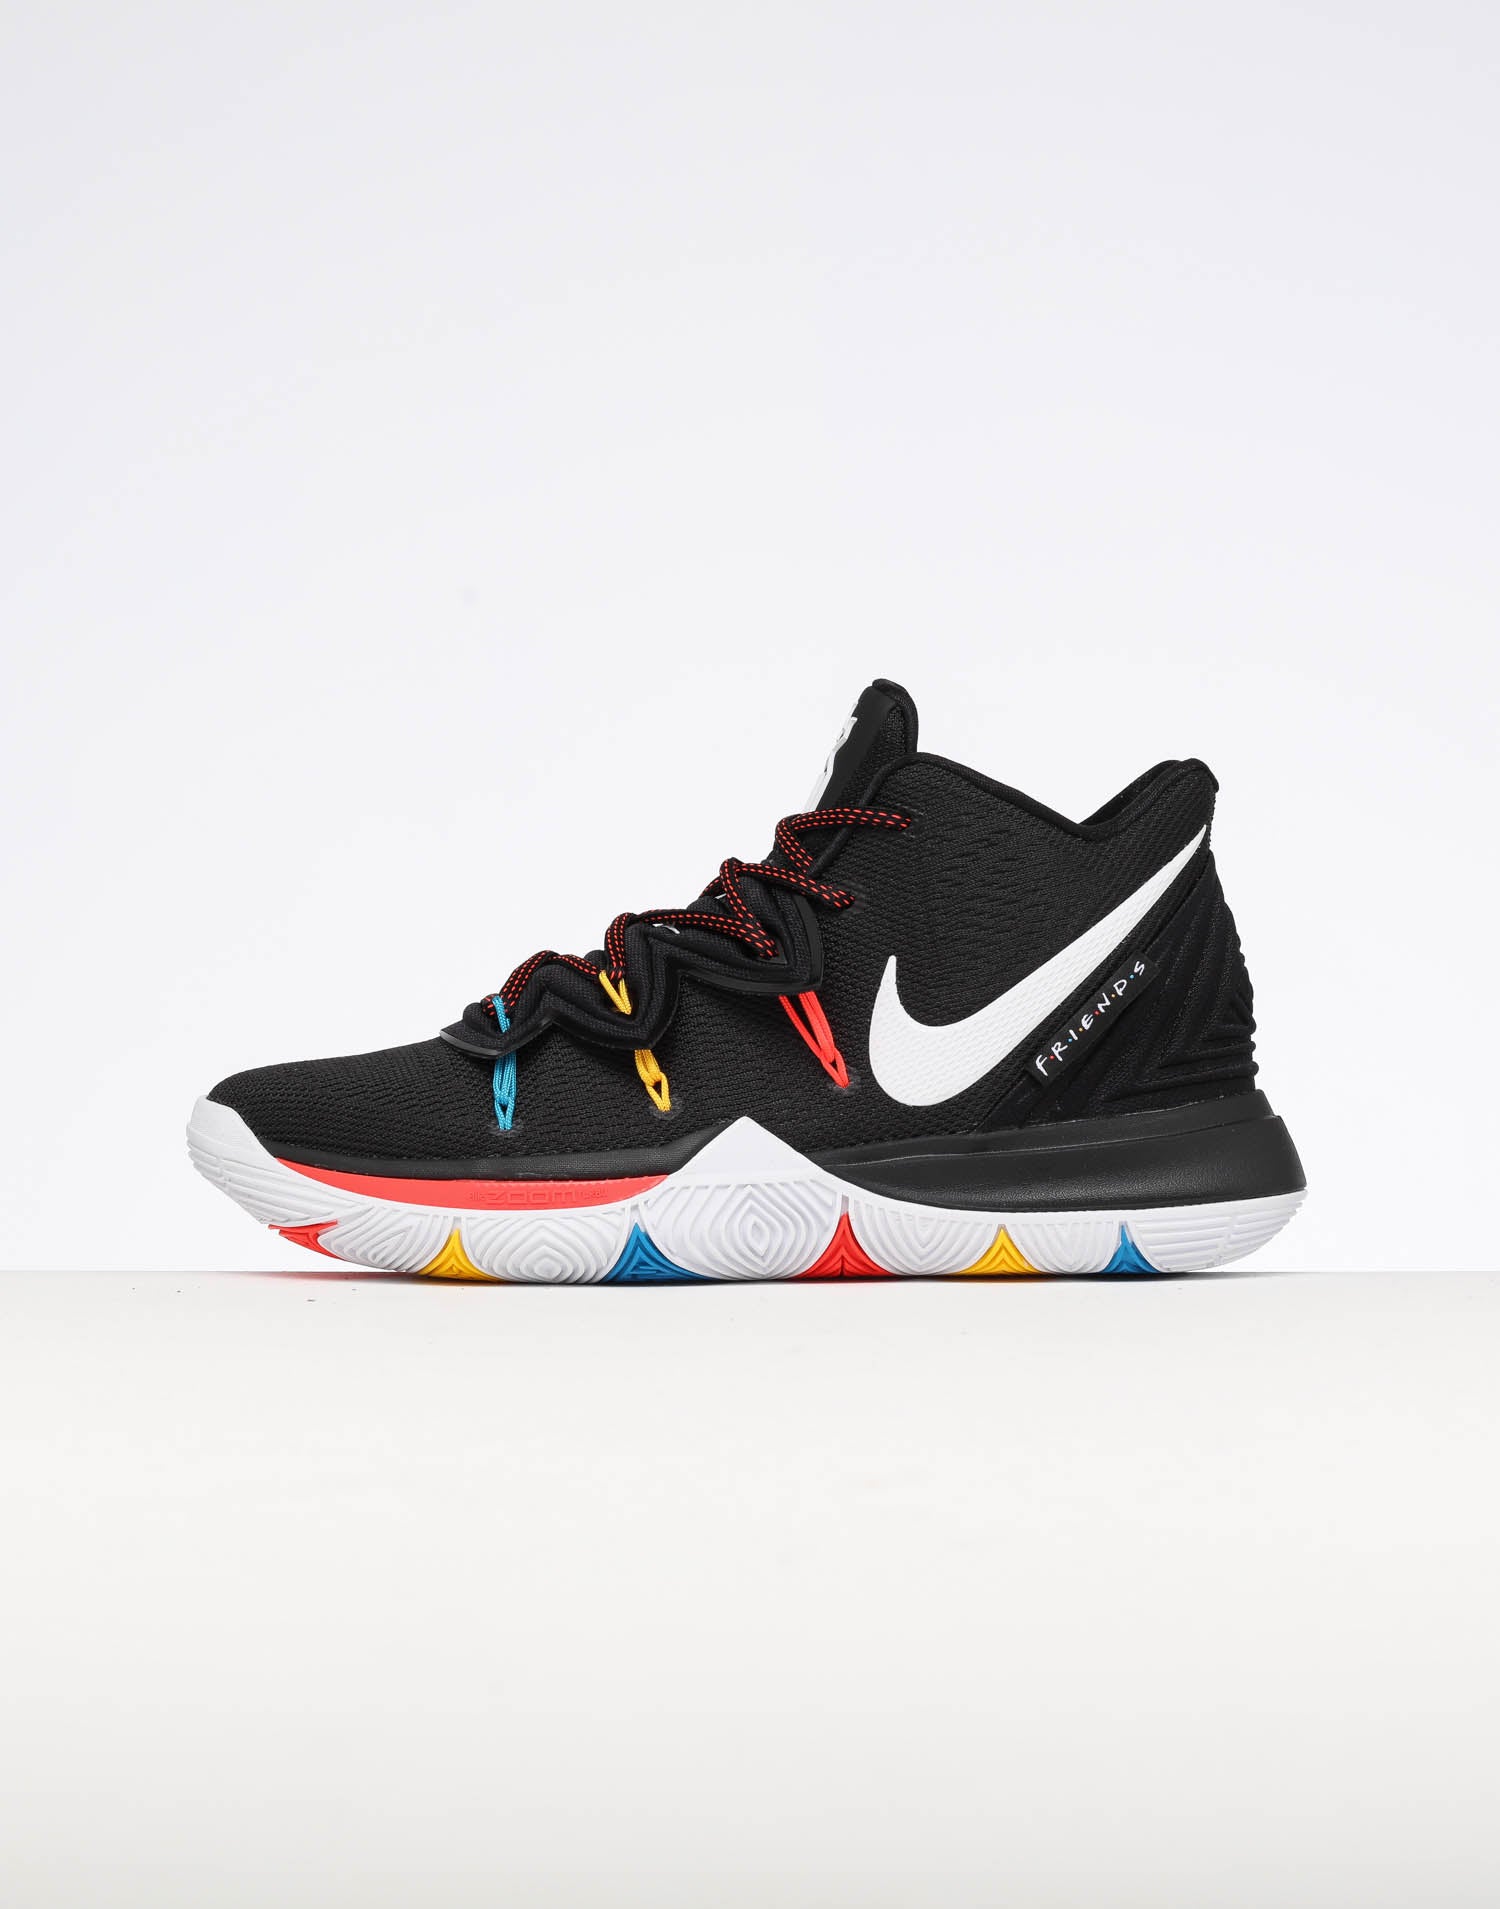 Nike Vapor X Kyrie 5 BQ5952 100 Release Date Sneaker